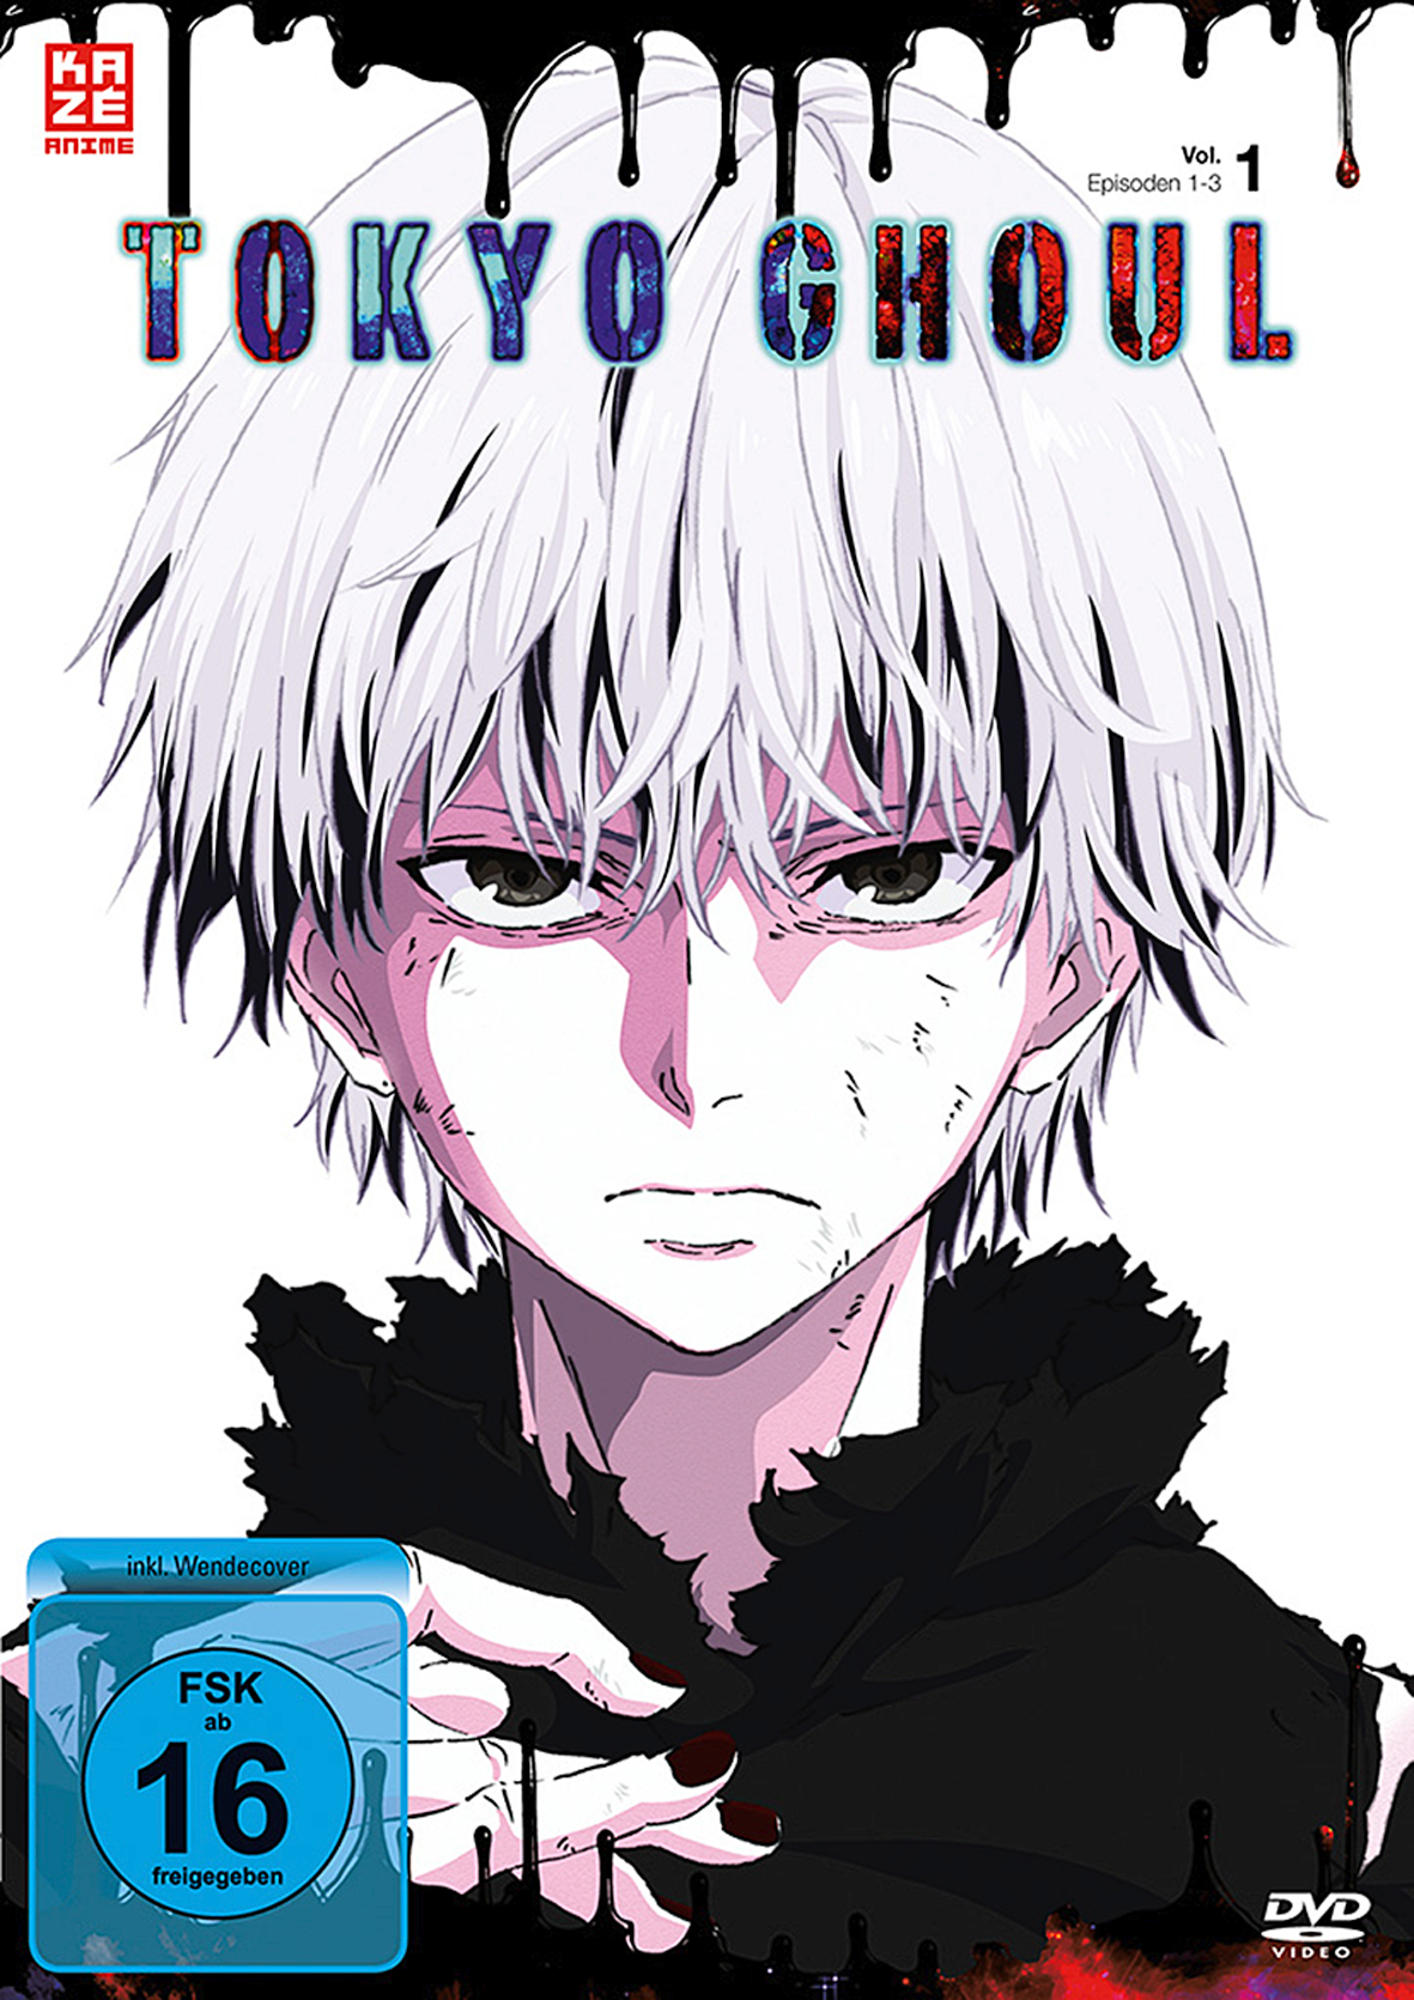 Vol. 1 Tokyo - Ghoul DVD